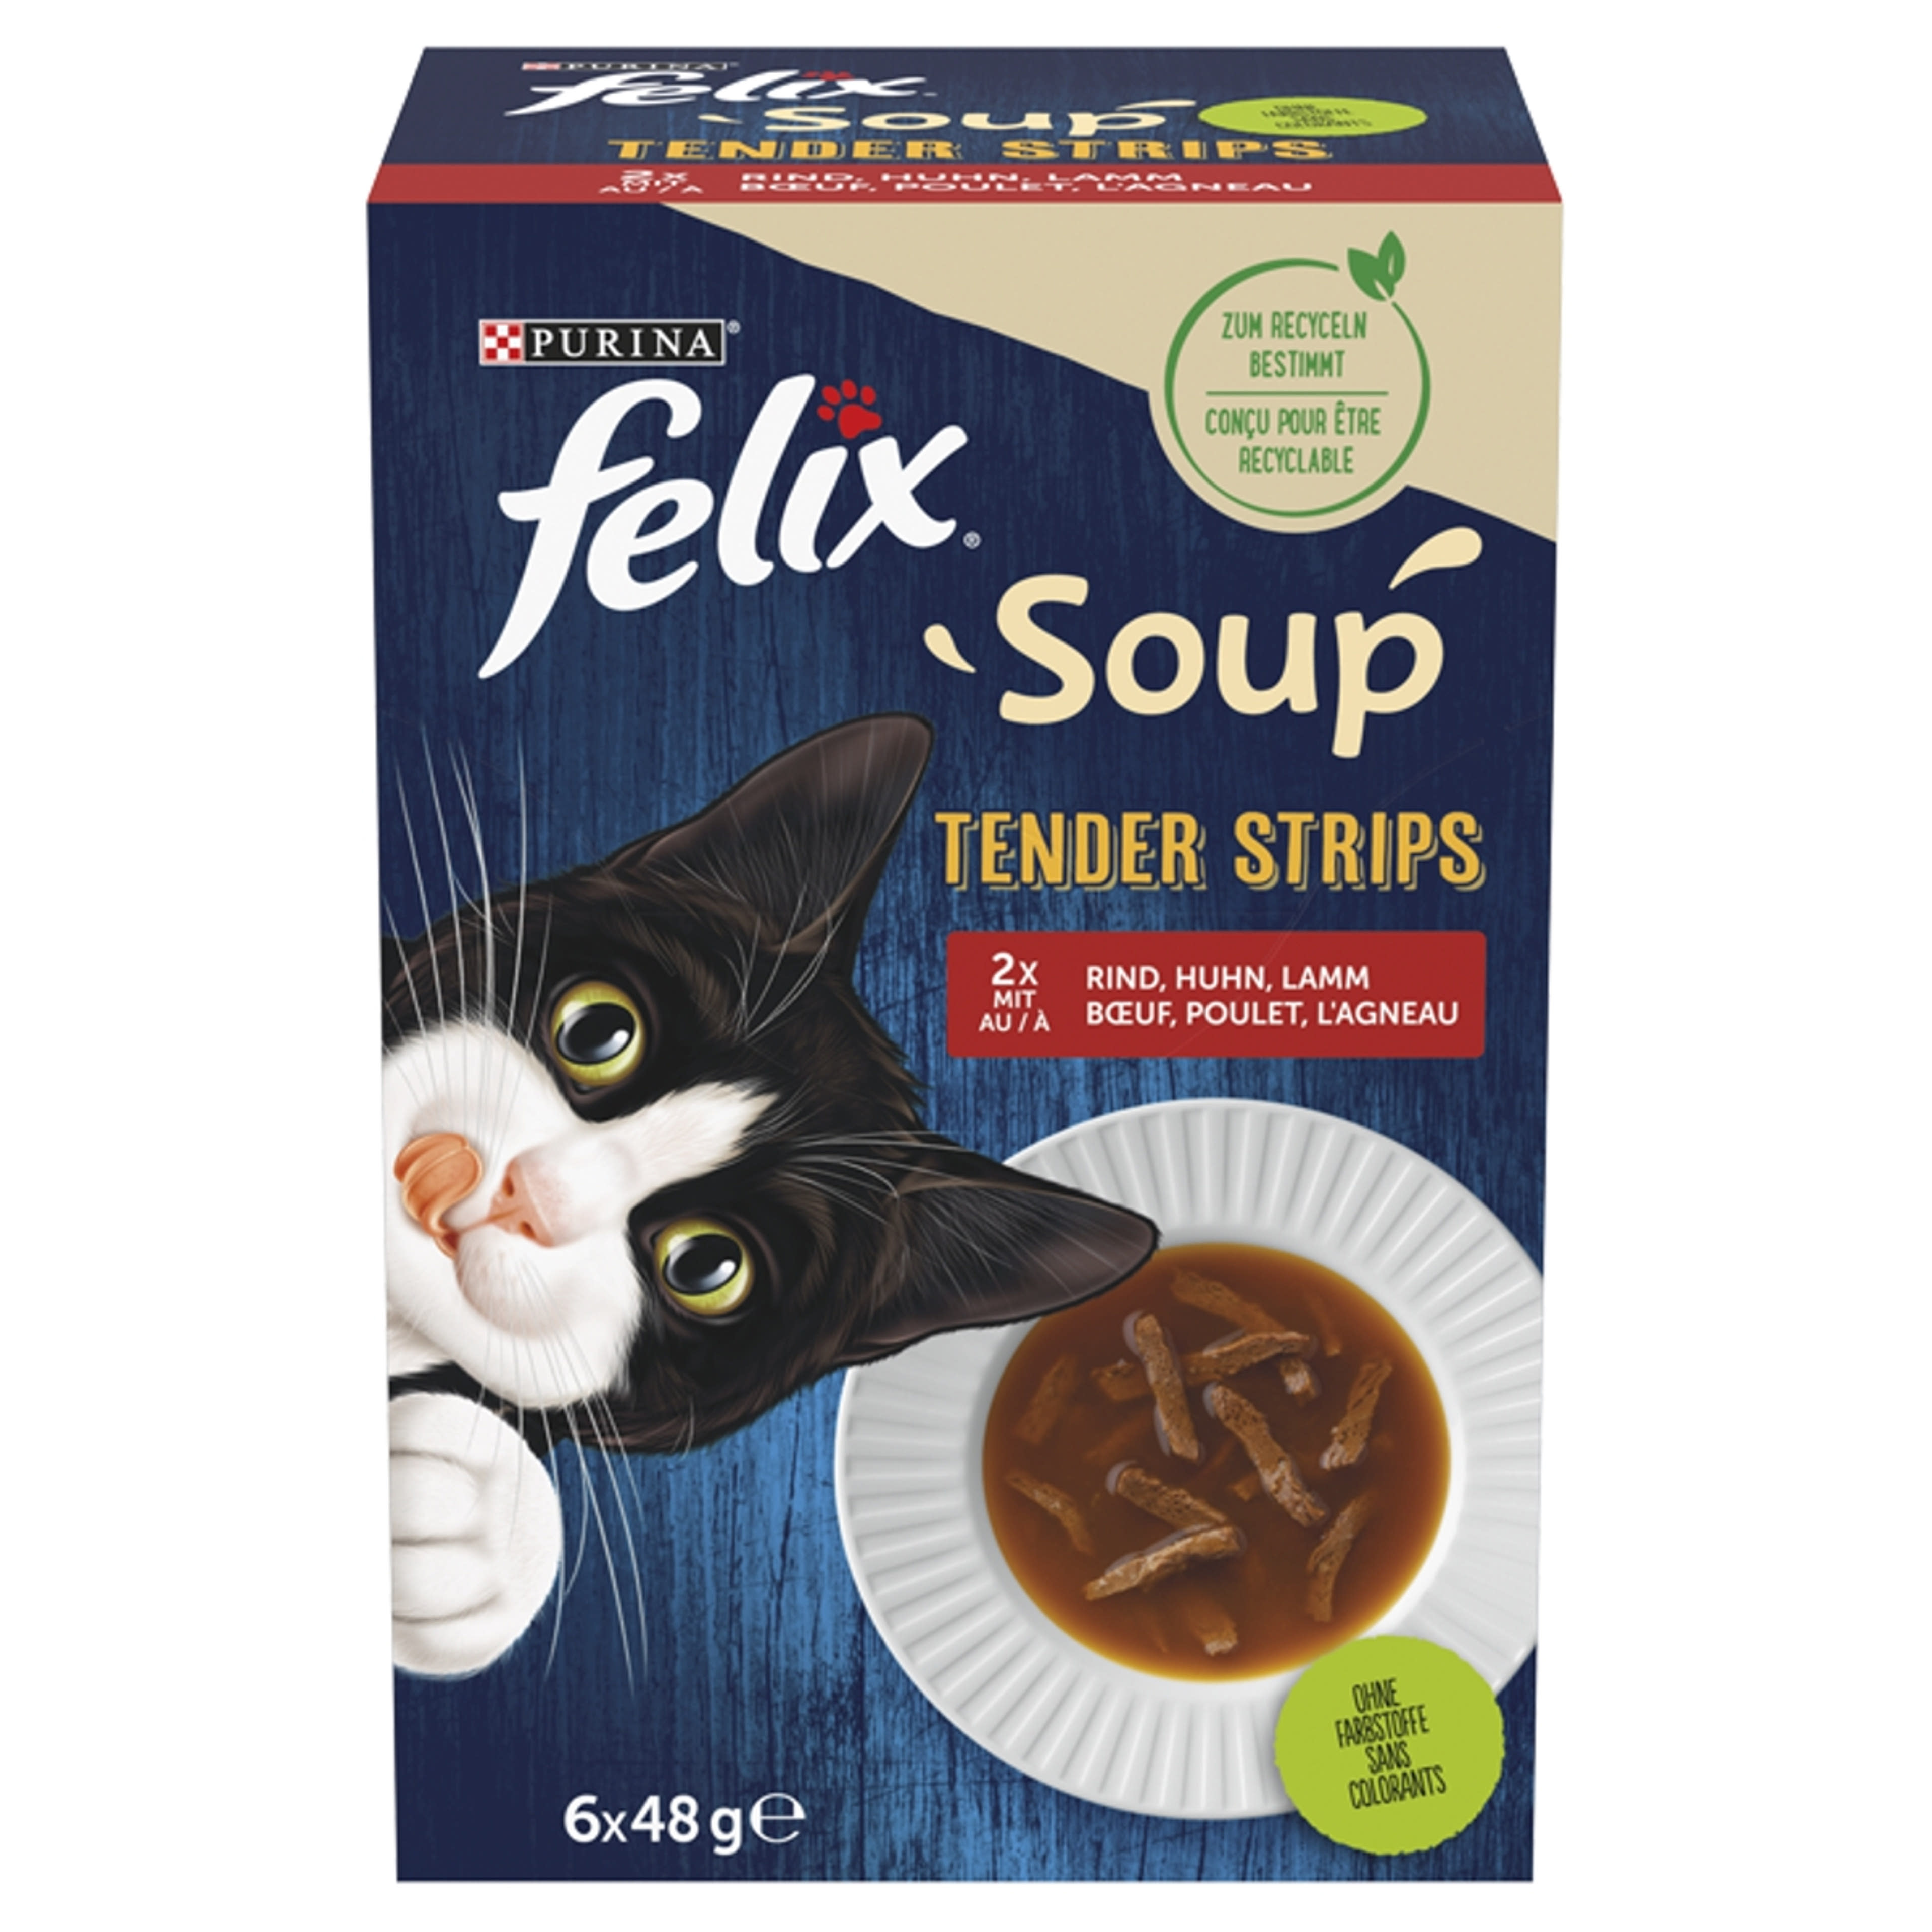 Felix Soup Tender Strips Házias válogatás alutasak macskáknak 6 x 48 g - 288 g